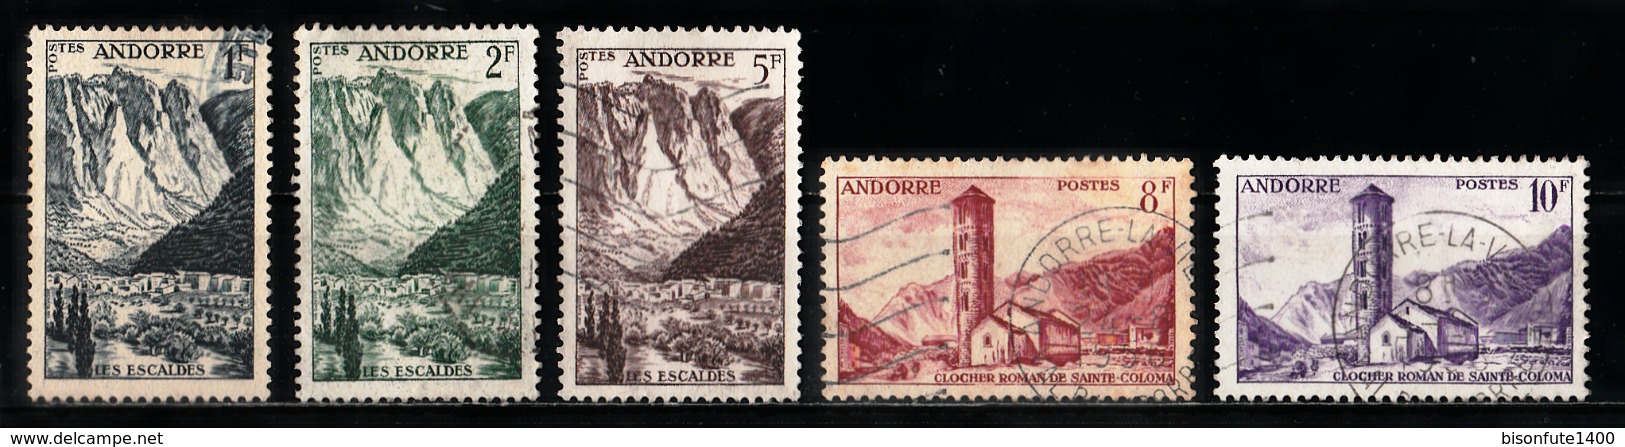 Andorre Français 1955 - 1958 : Timbres Yvert & Tellier N° 138 - 139 - 141 - 143 - 144 - 145 - 146 - 147 - 148 - 149 -... - Oblitérés